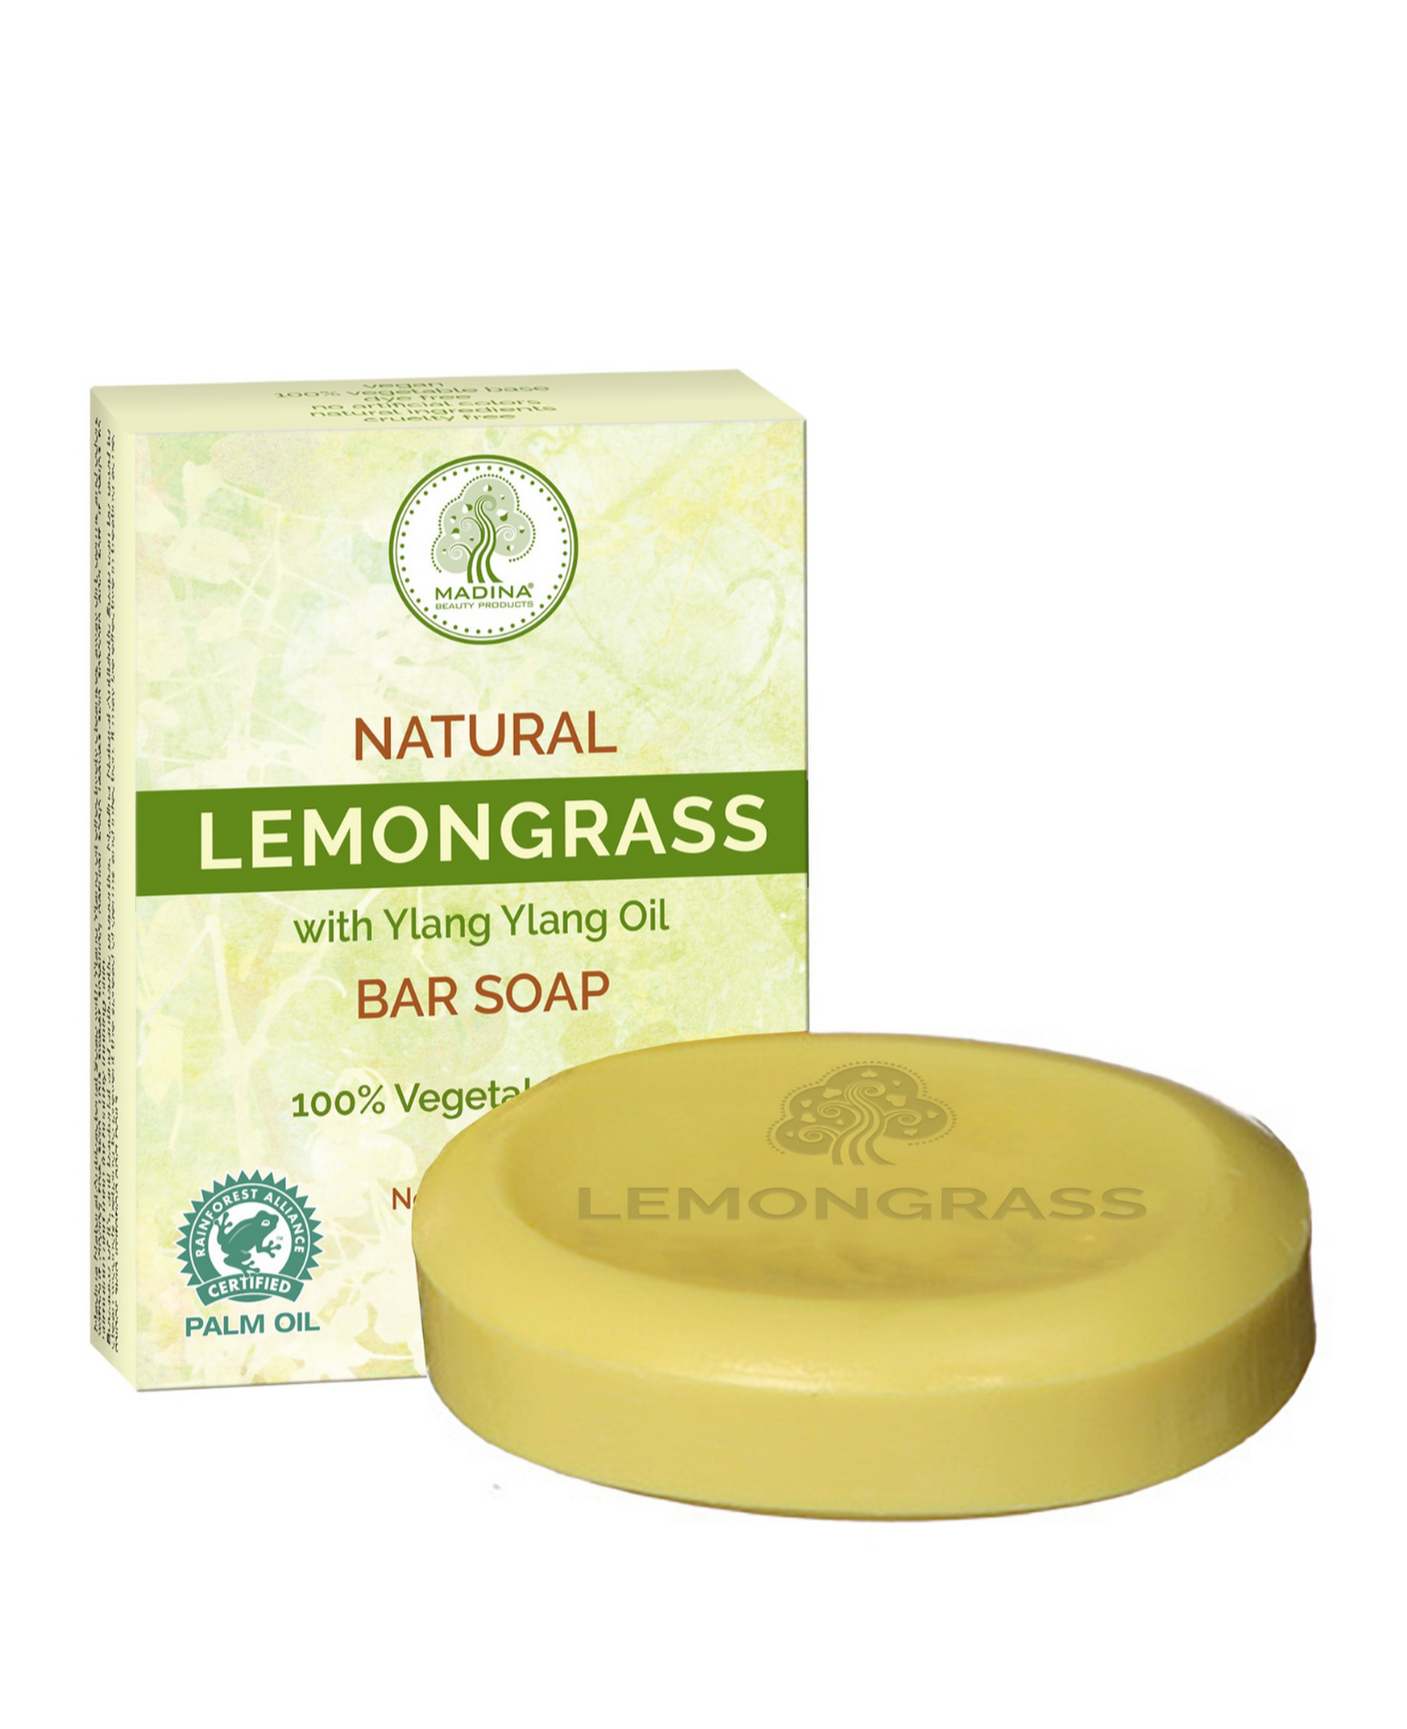 Natural Lemongrass with ylang ylang oil